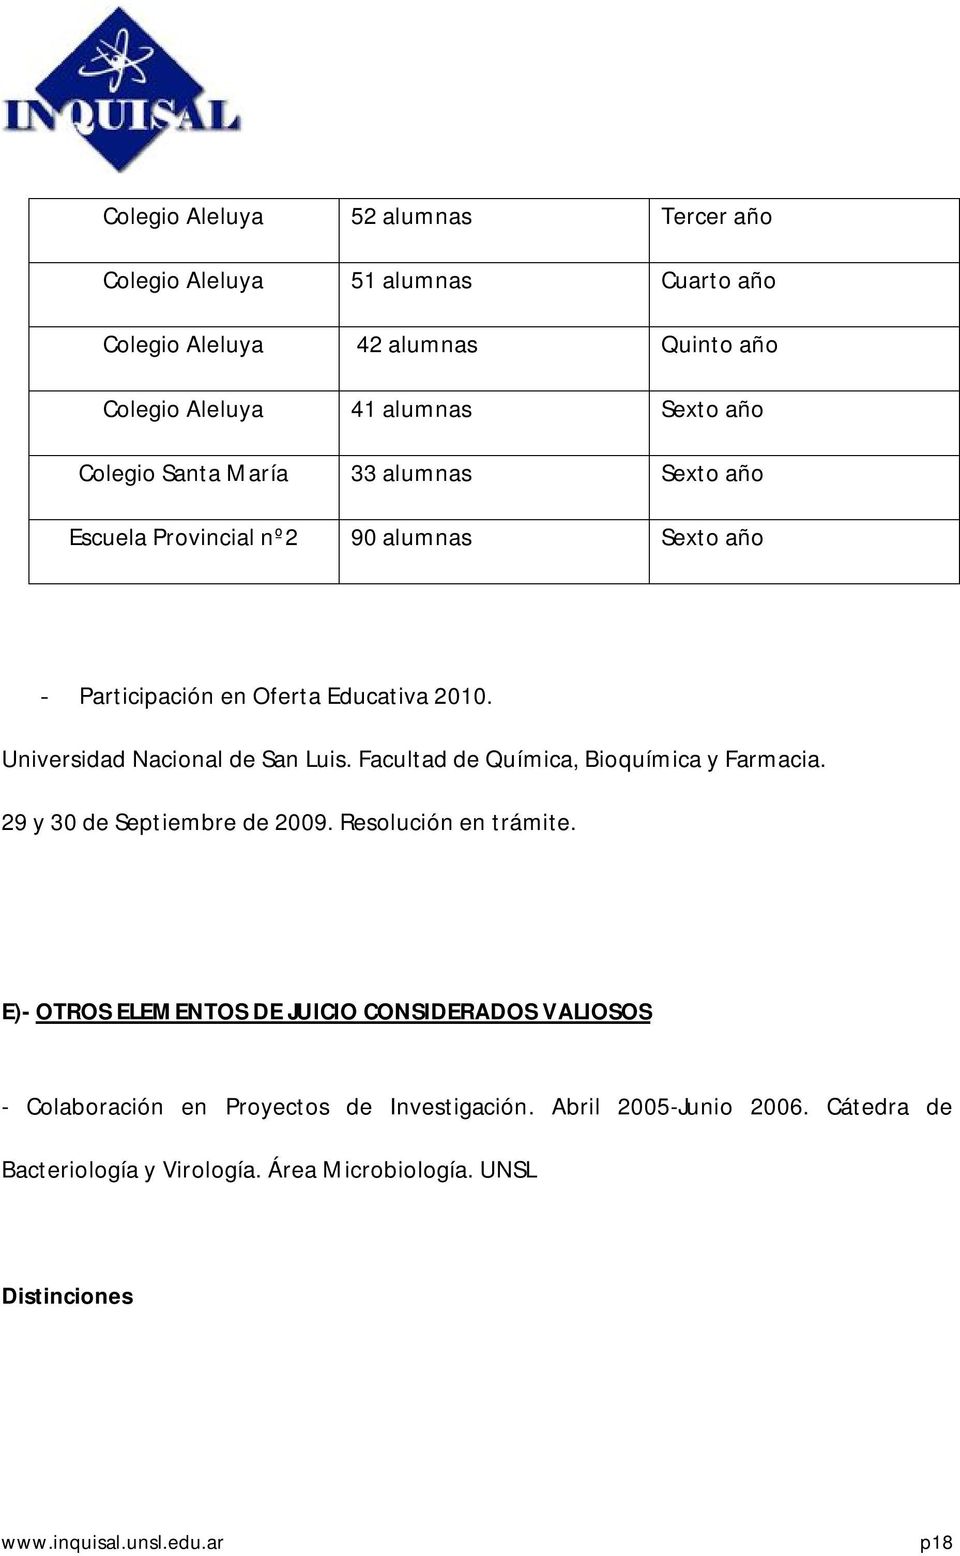 Universidad Nacional de San Luis. Facultad de Química, Bioquímica y Farmacia. 29 y 30 de Septiembre de 2009. Resolución en trámite.